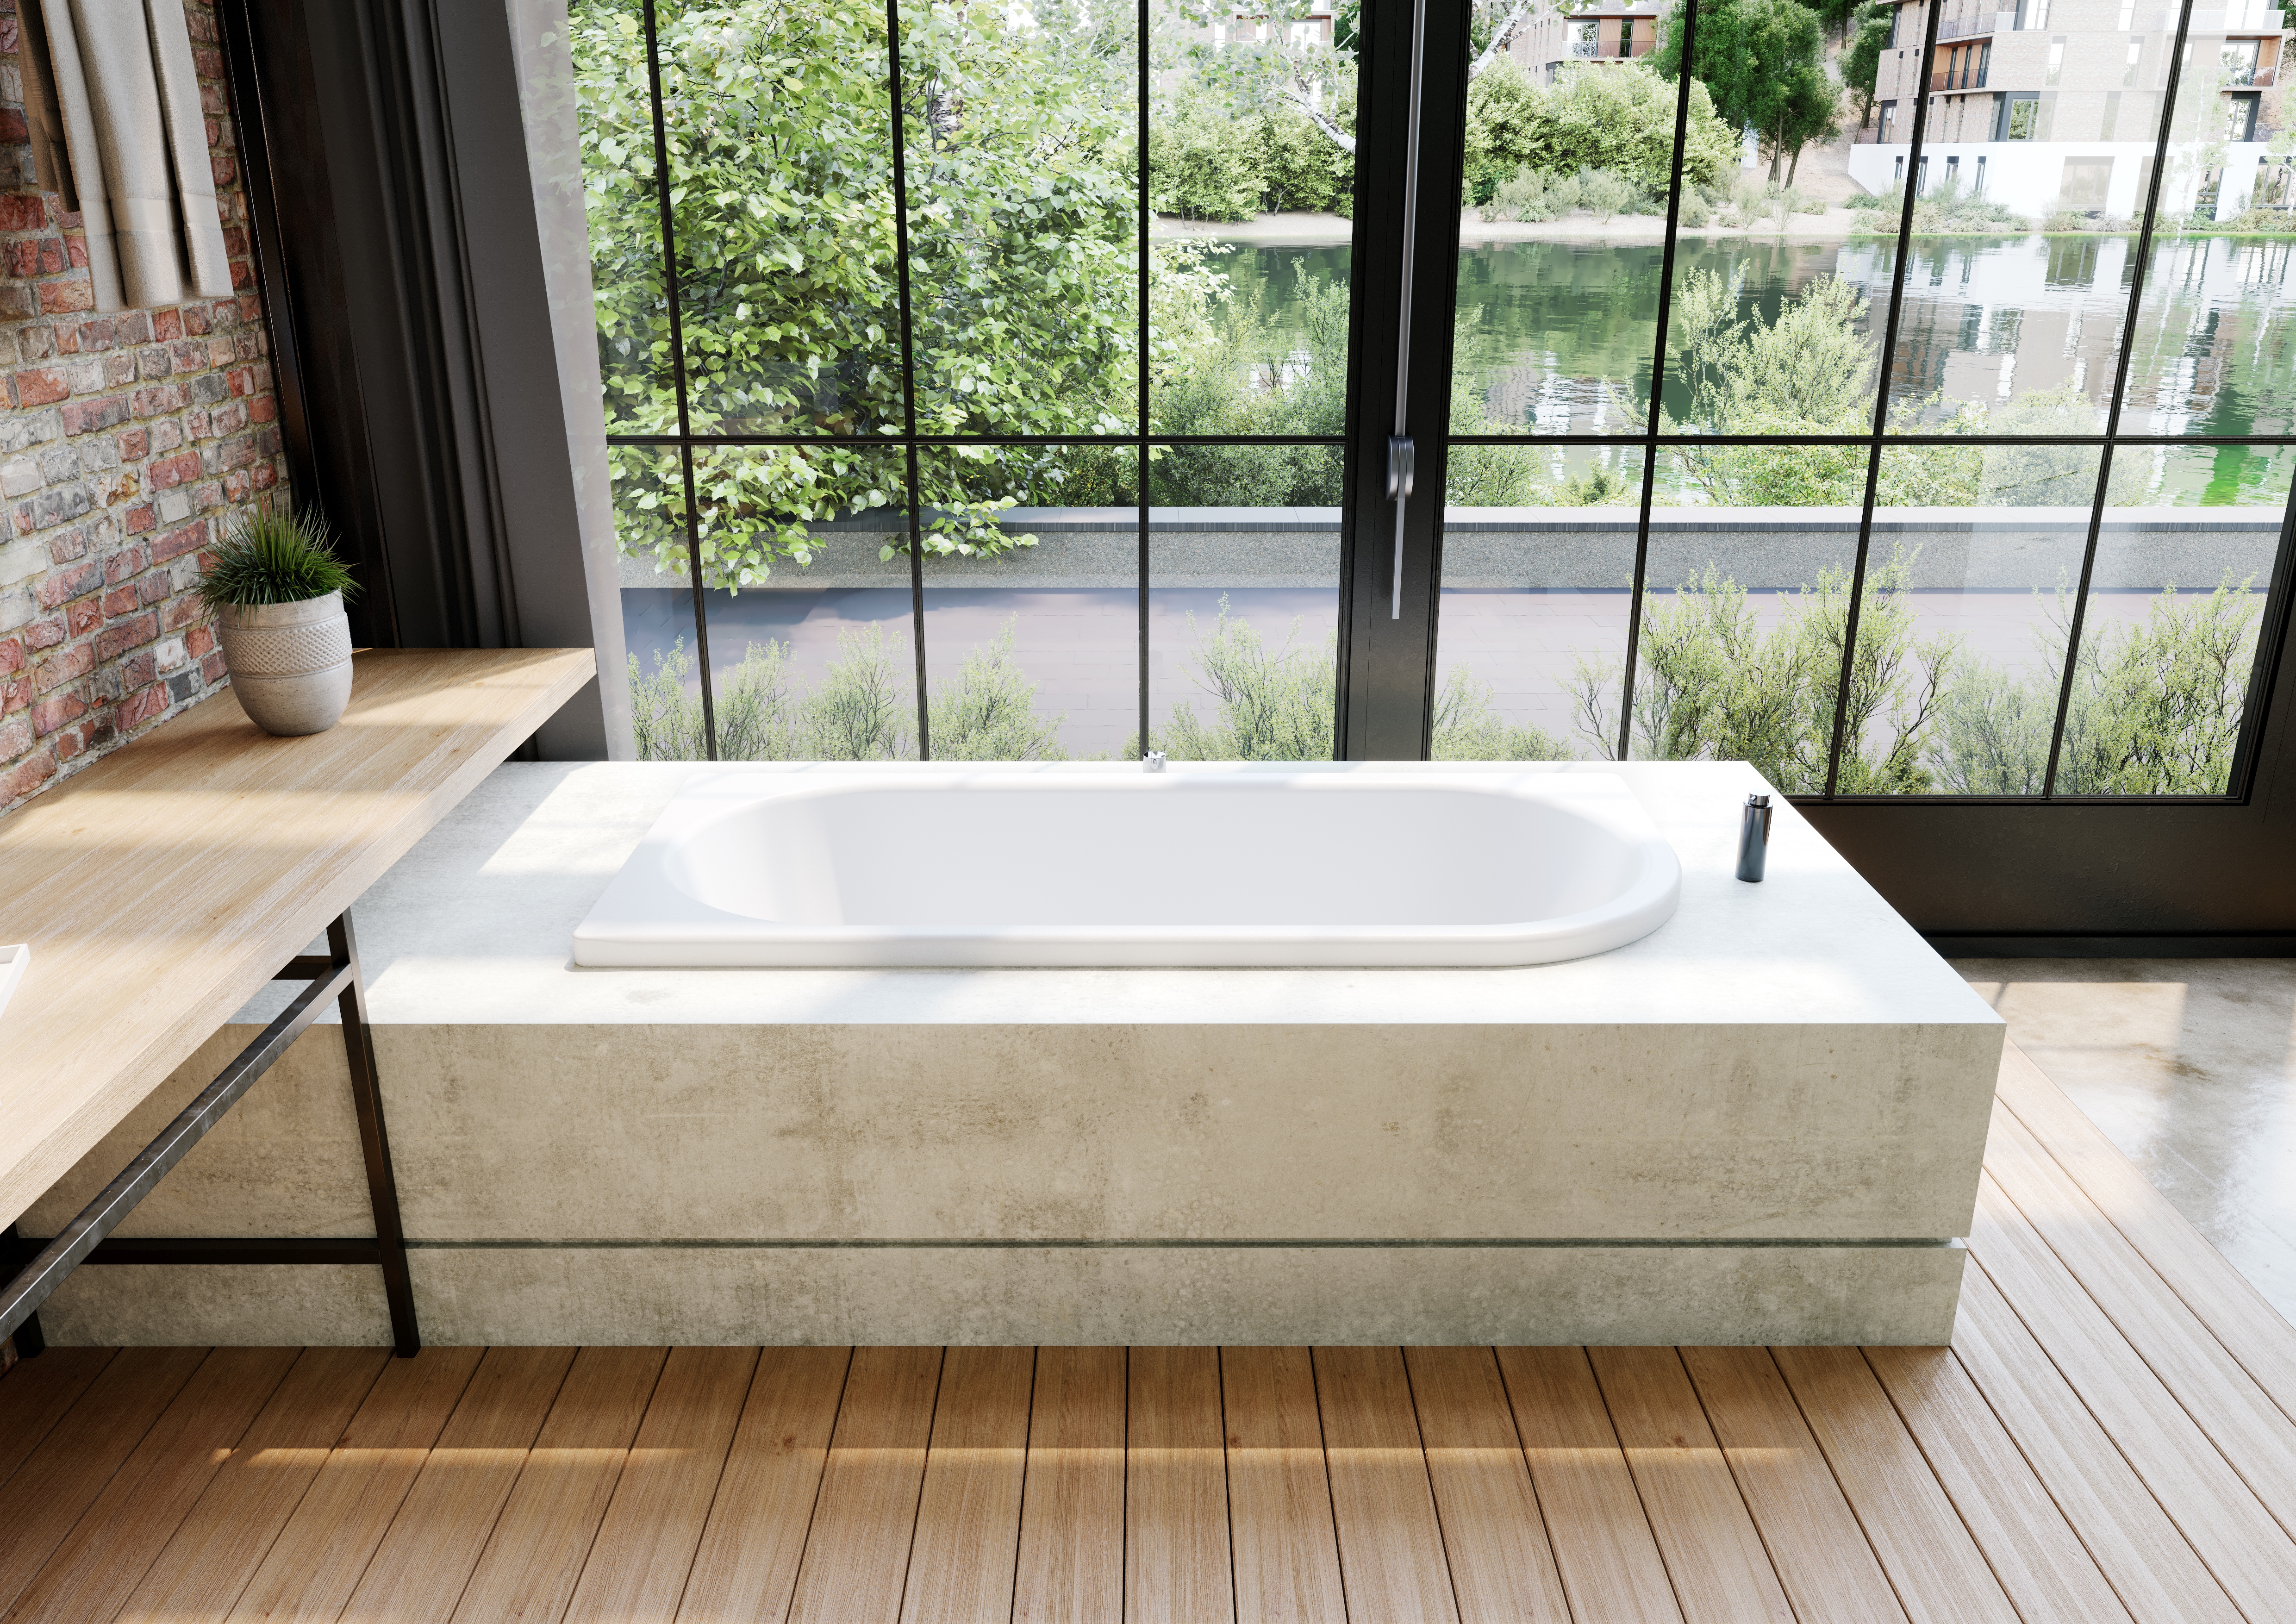 Kaldewei eck, asymmetrisch rechteck Badewanne „Centro Duo 1“ 180 × 80 cm in alpinweiß, / 